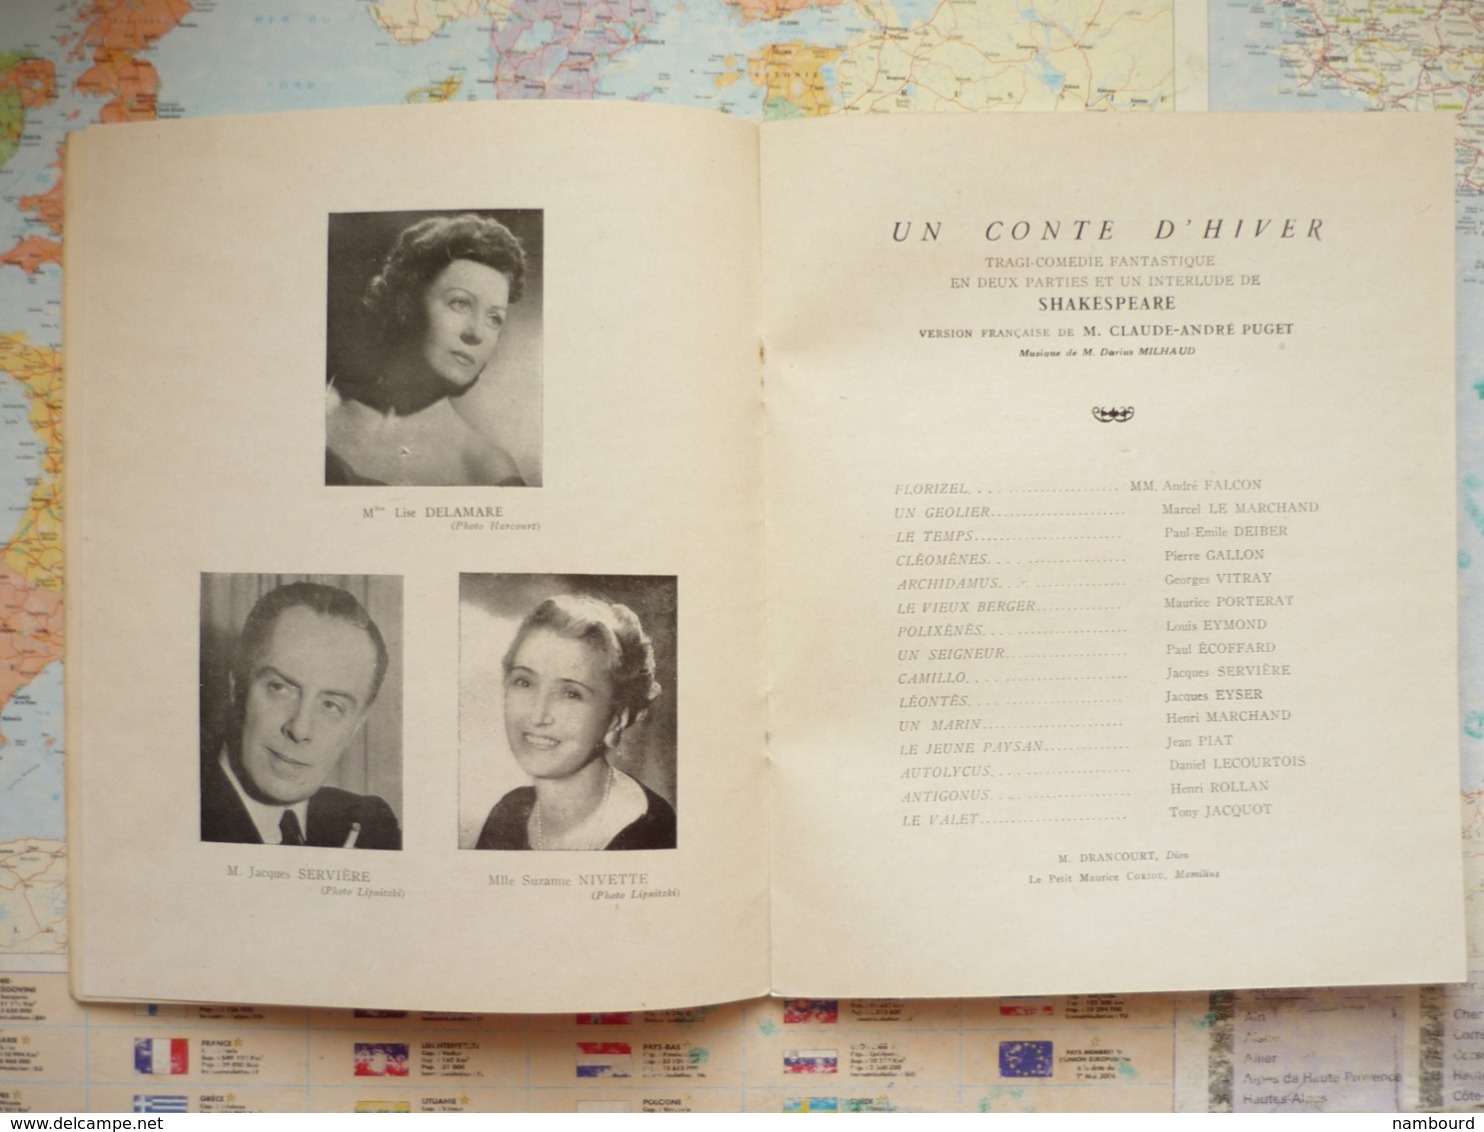 Un Conte D'Hiver / Shakespeare Soirée Du Samedi 10 Mars 1951 à La Comédie Française - Programas